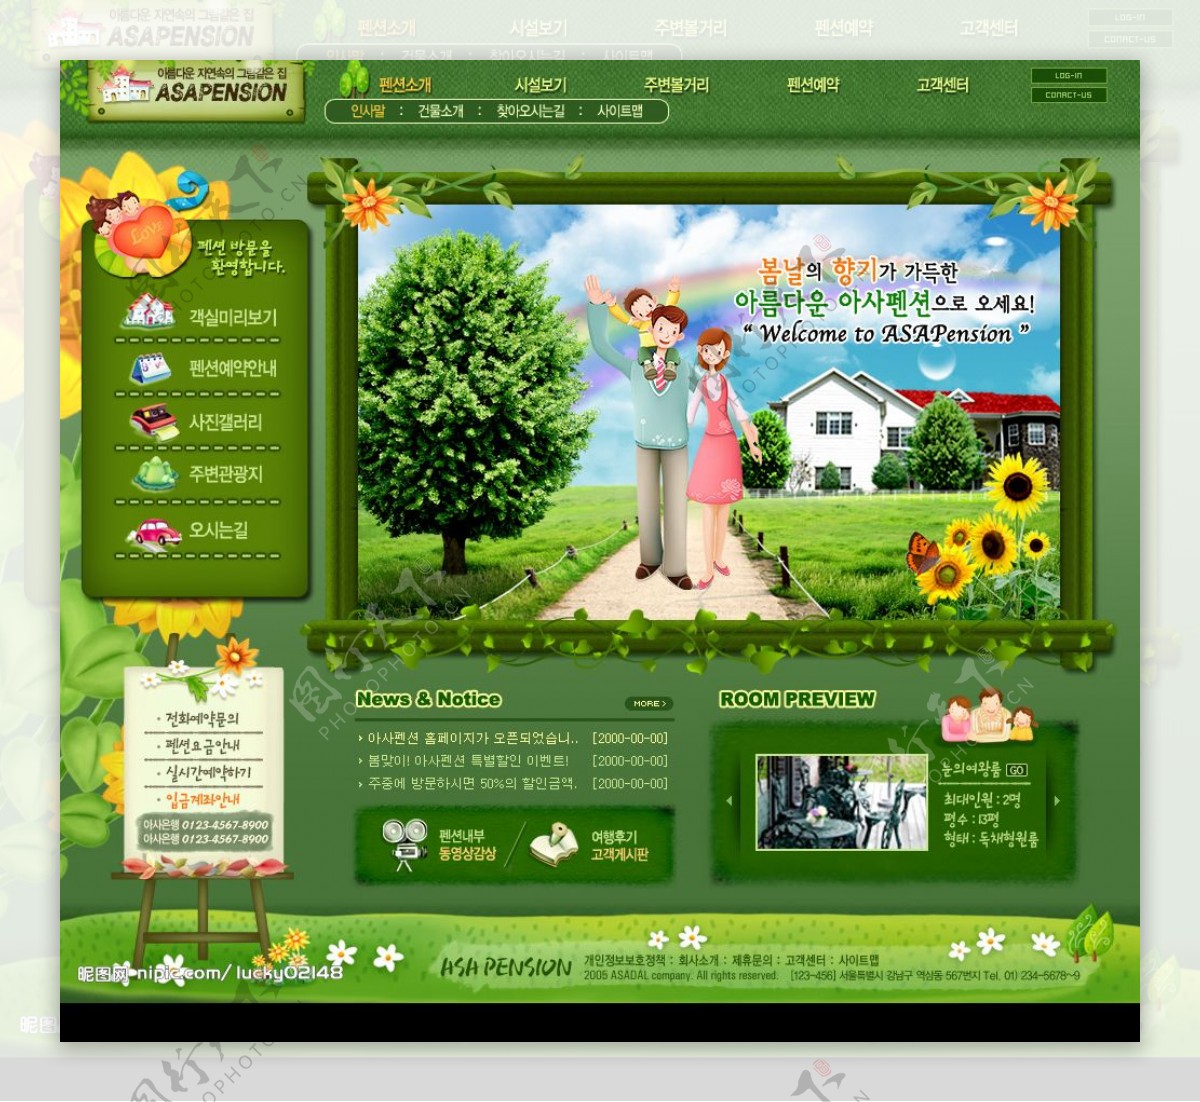 绿色生活网站界面图片